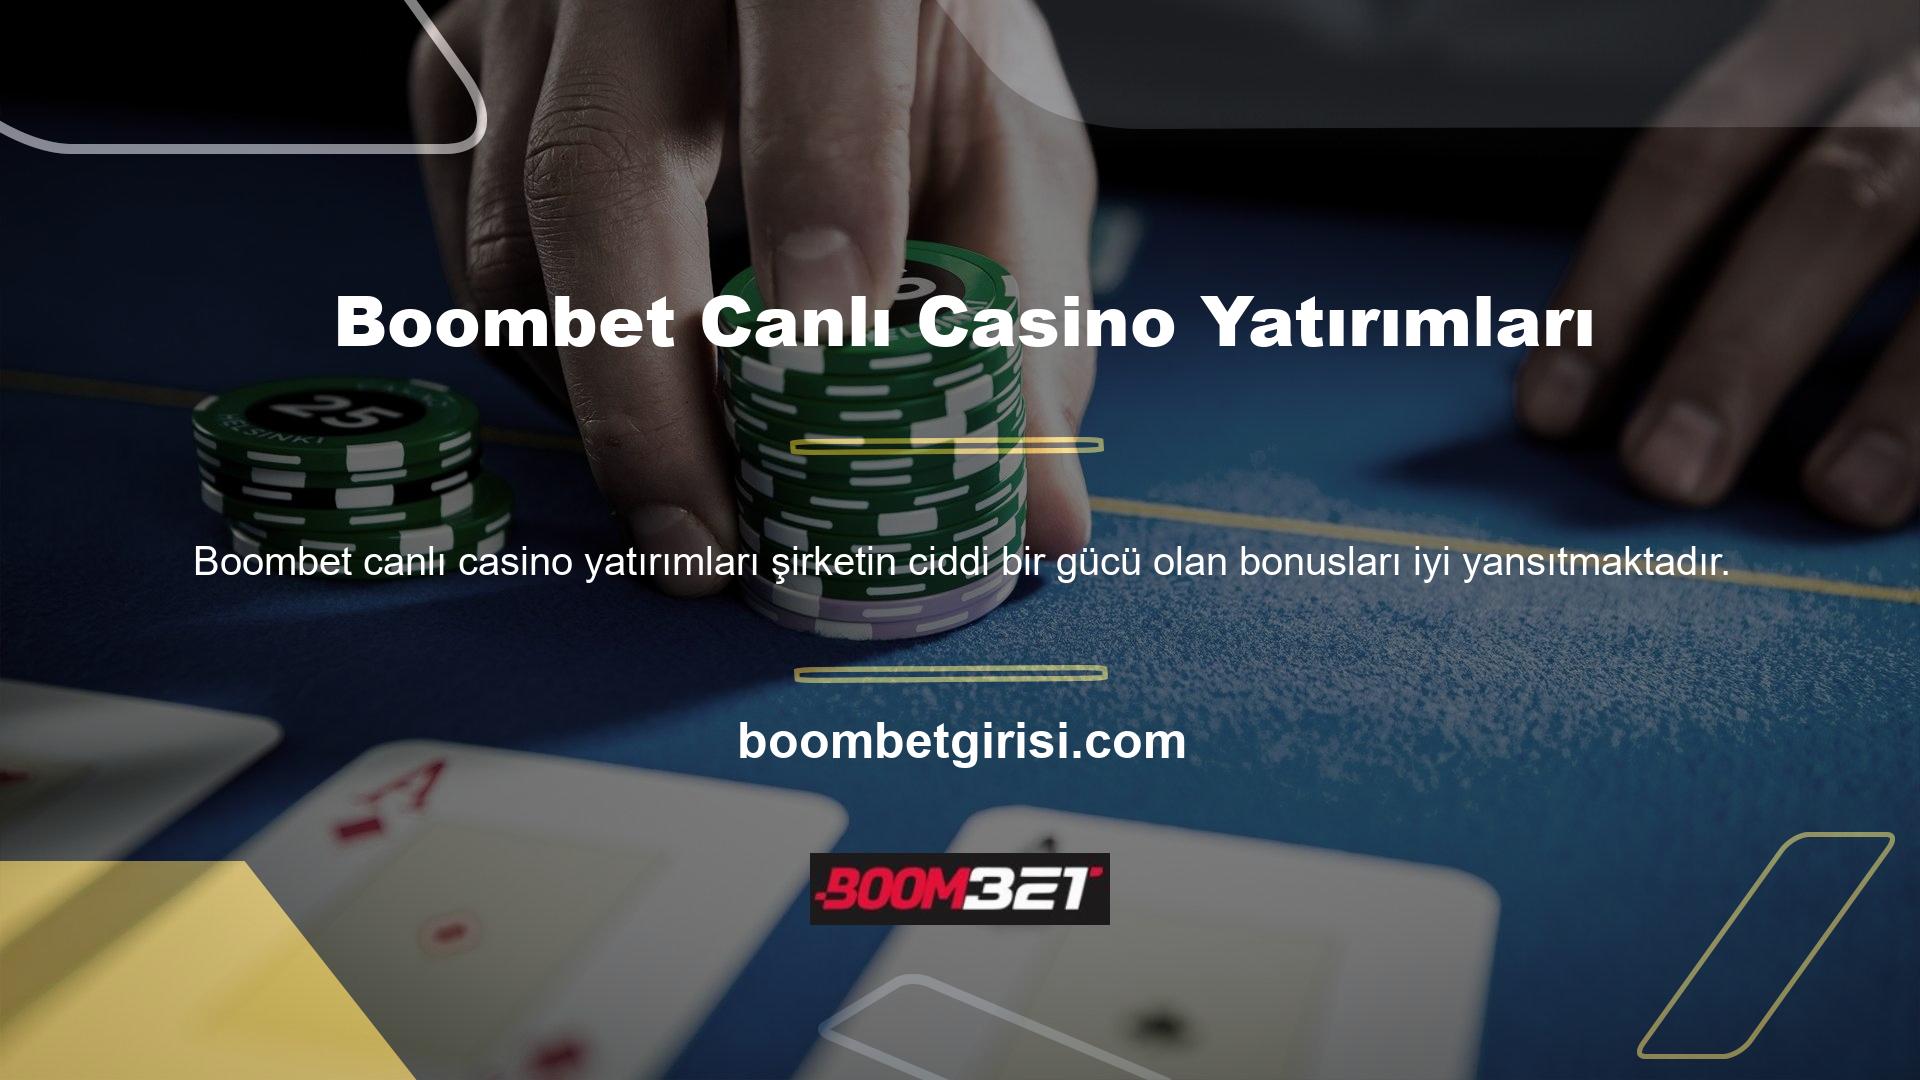 Boombet Canlı Casino'da yatırımlarınız için her zaman bonus alabilirsiniz